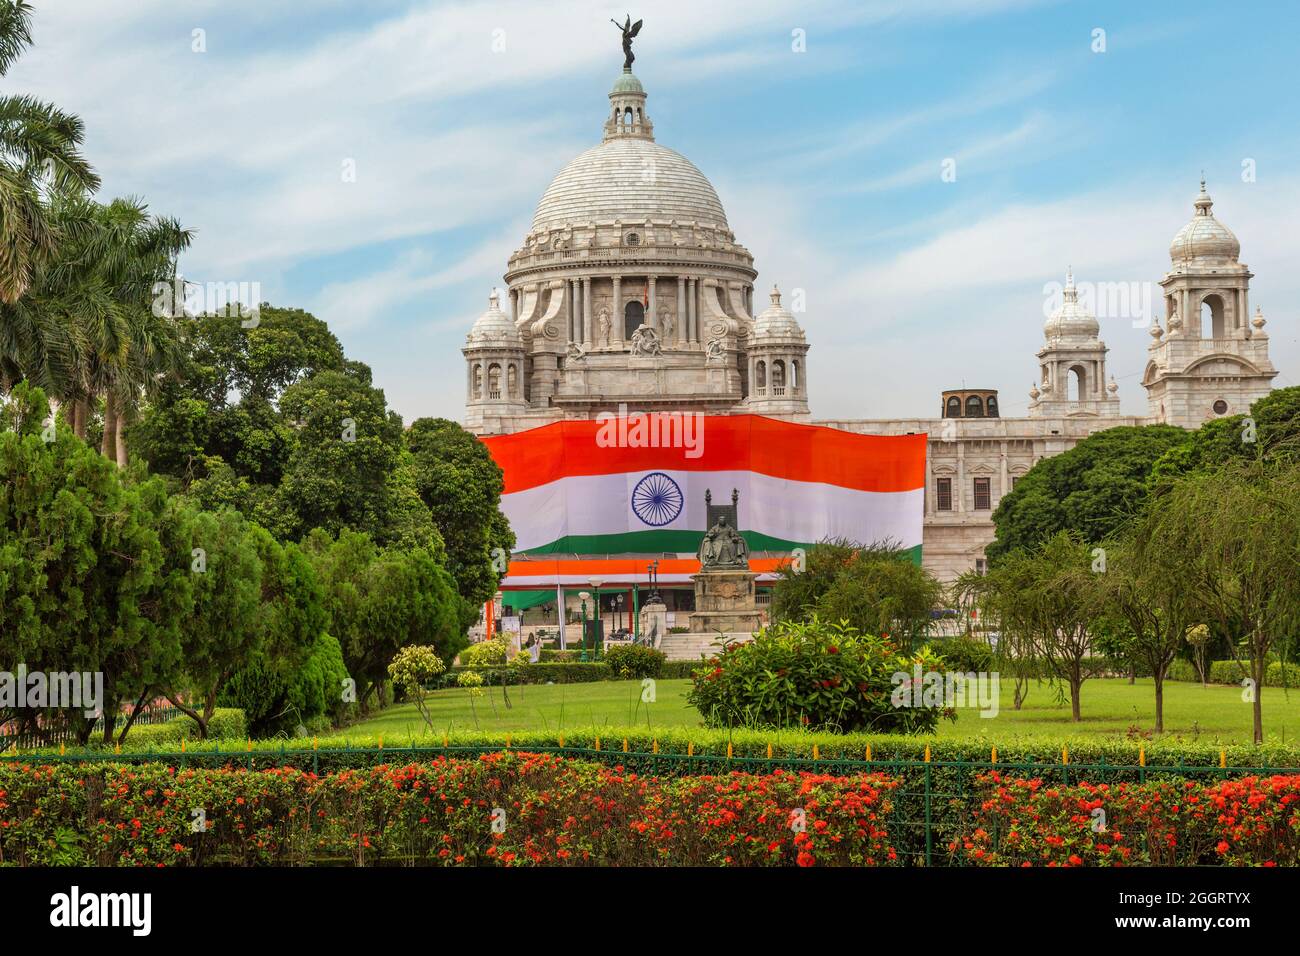 Monumento conmemorativo de Victoria en Kolkata con bandera nacional india en ocasión del día de la independencia Foto de stock